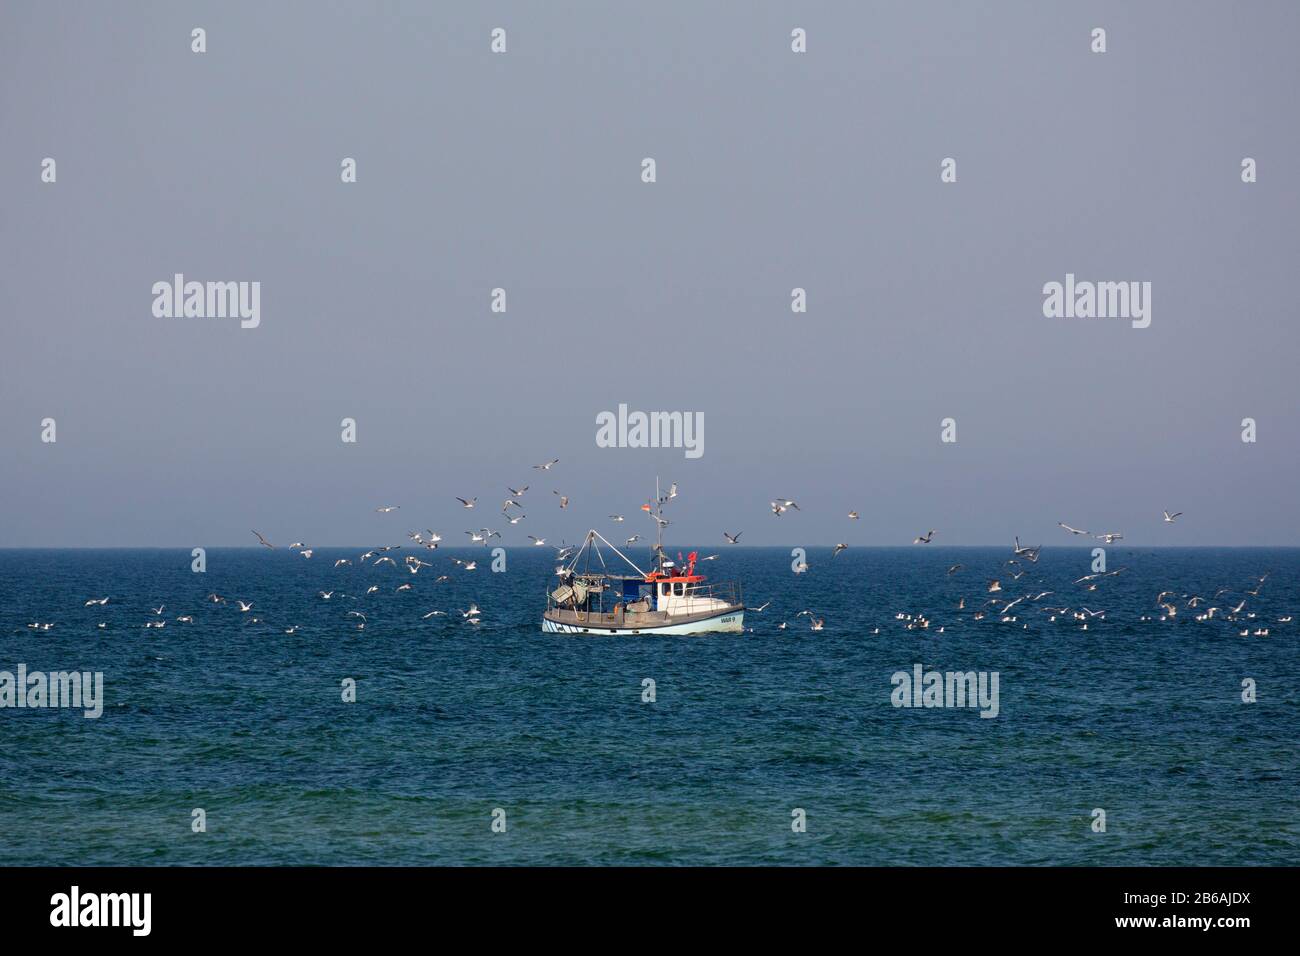 Barco de pesca / cortadora de vela en el Mar Báltico y seguido por una manada de gaviotas, Mecklemburgo Pernania Occidental, Alemania Foto de stock